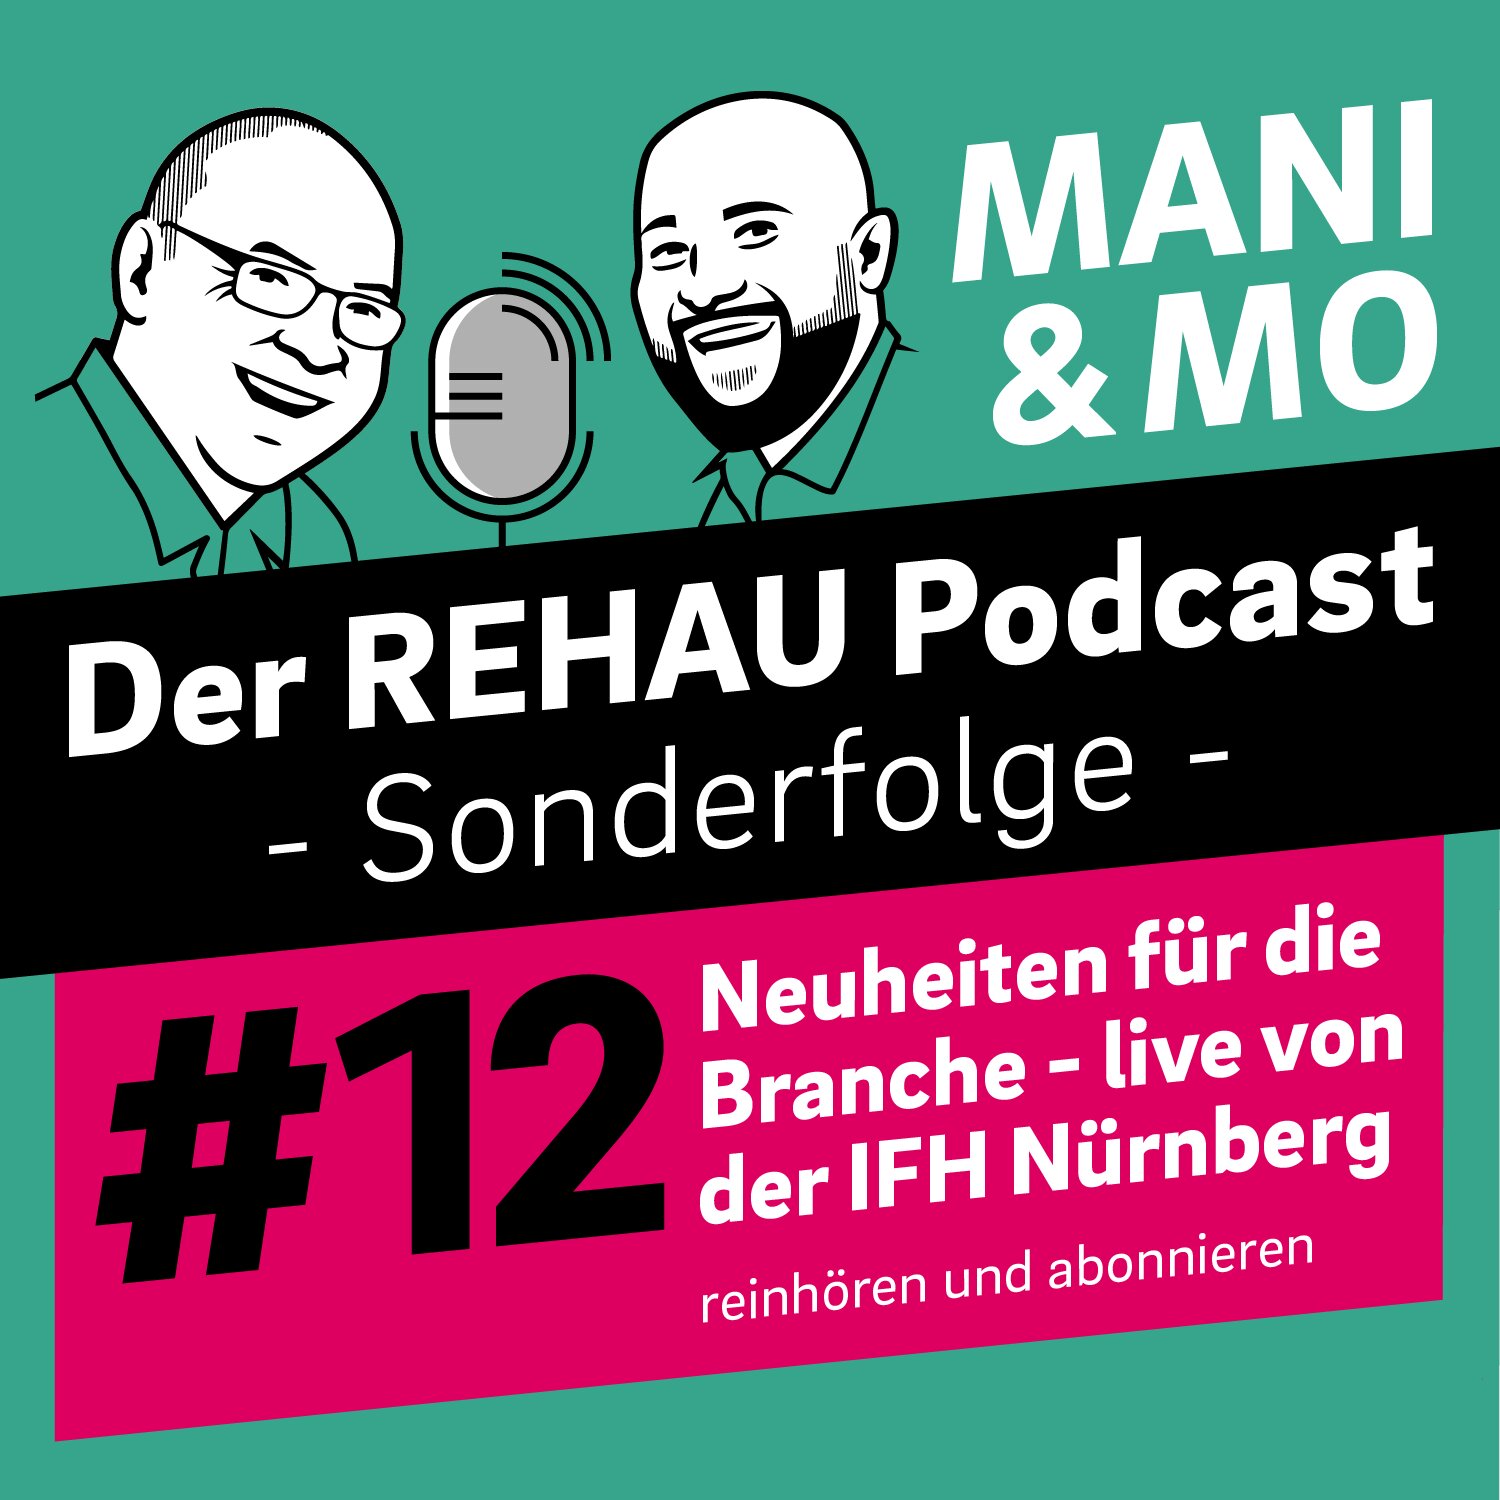 Neuheiten für die Branche - Mani und Mo live von der IFH Nürnberg